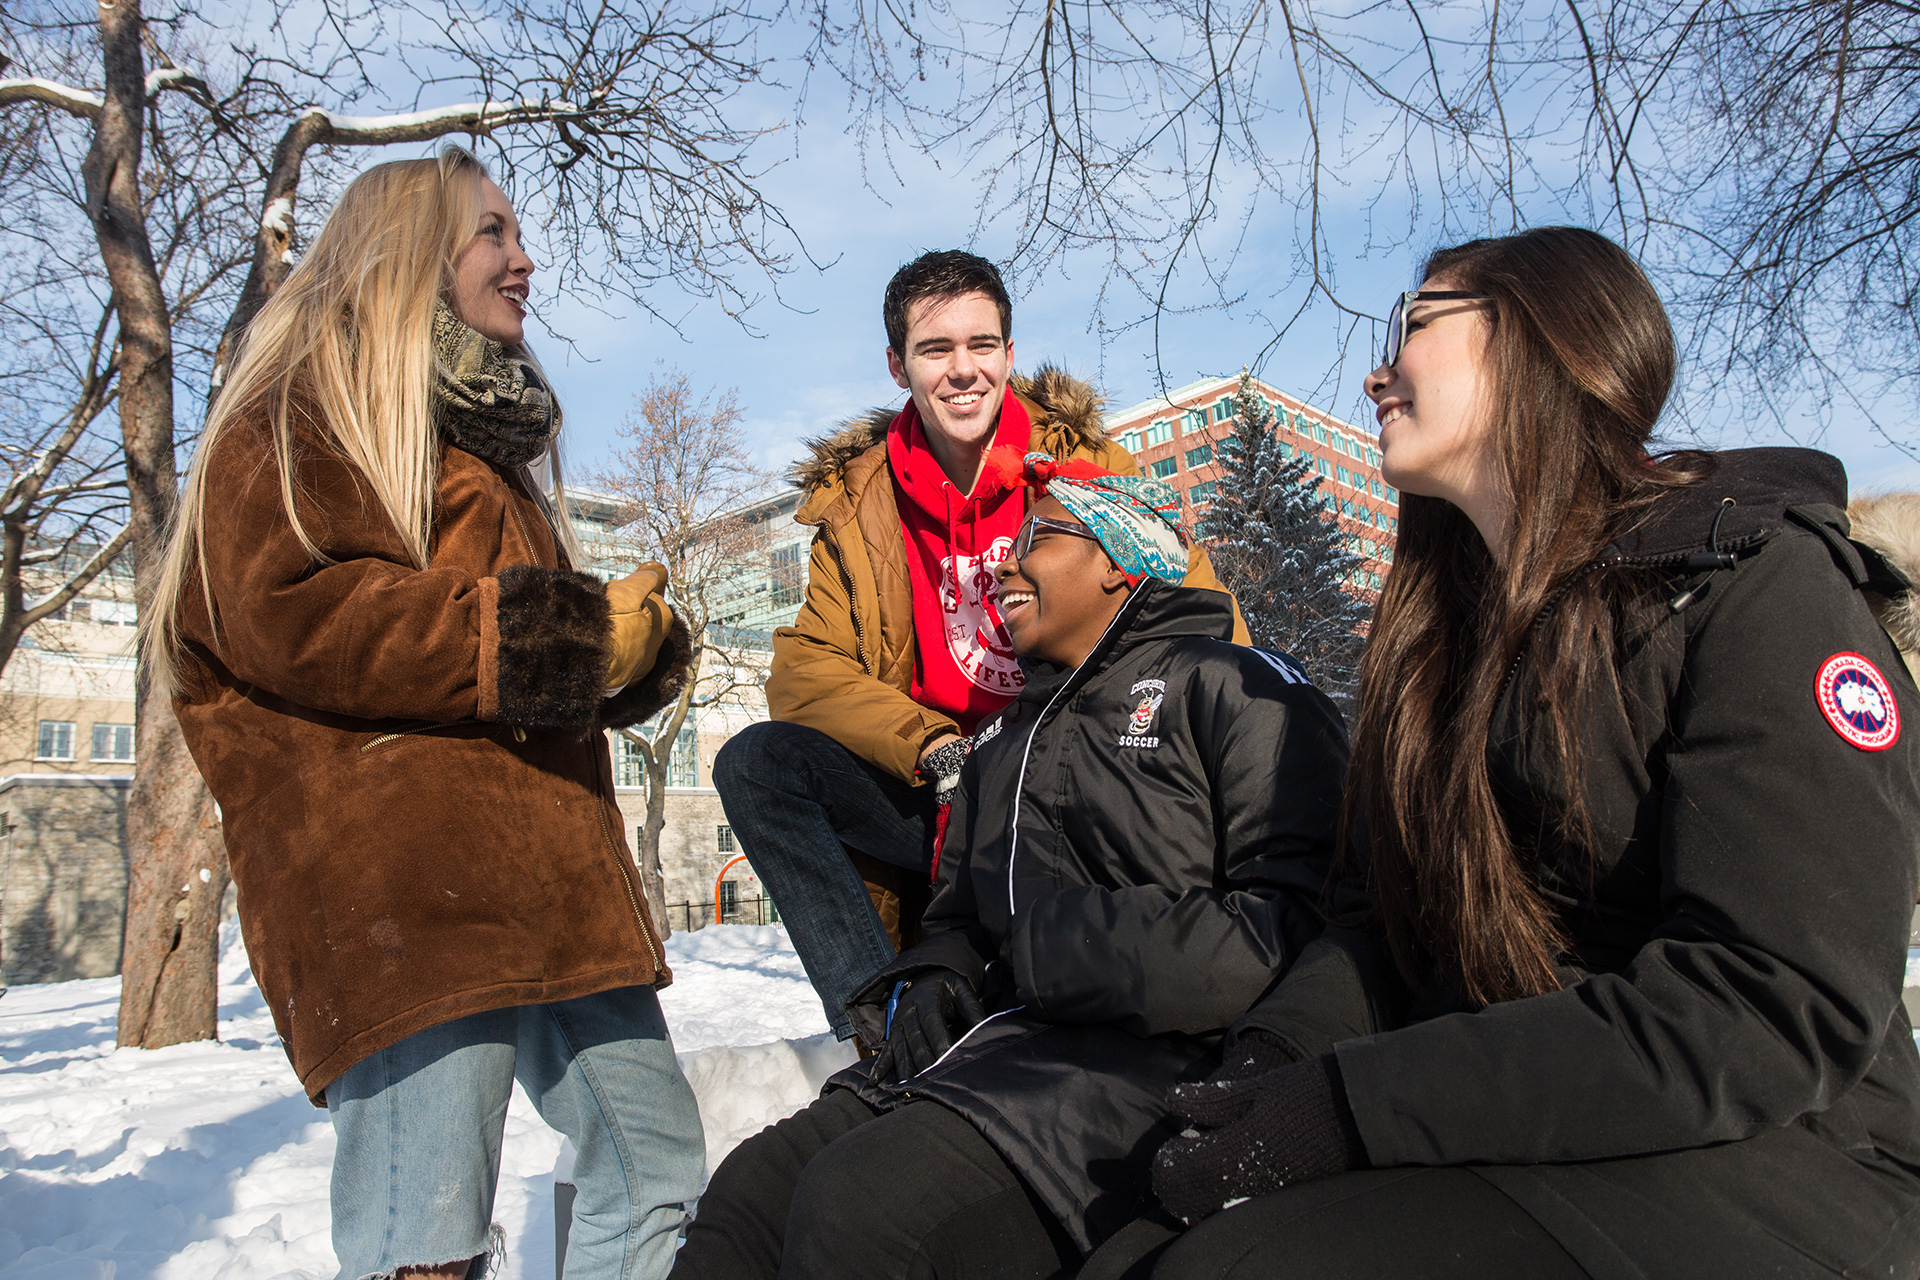 Students talking outside in winter